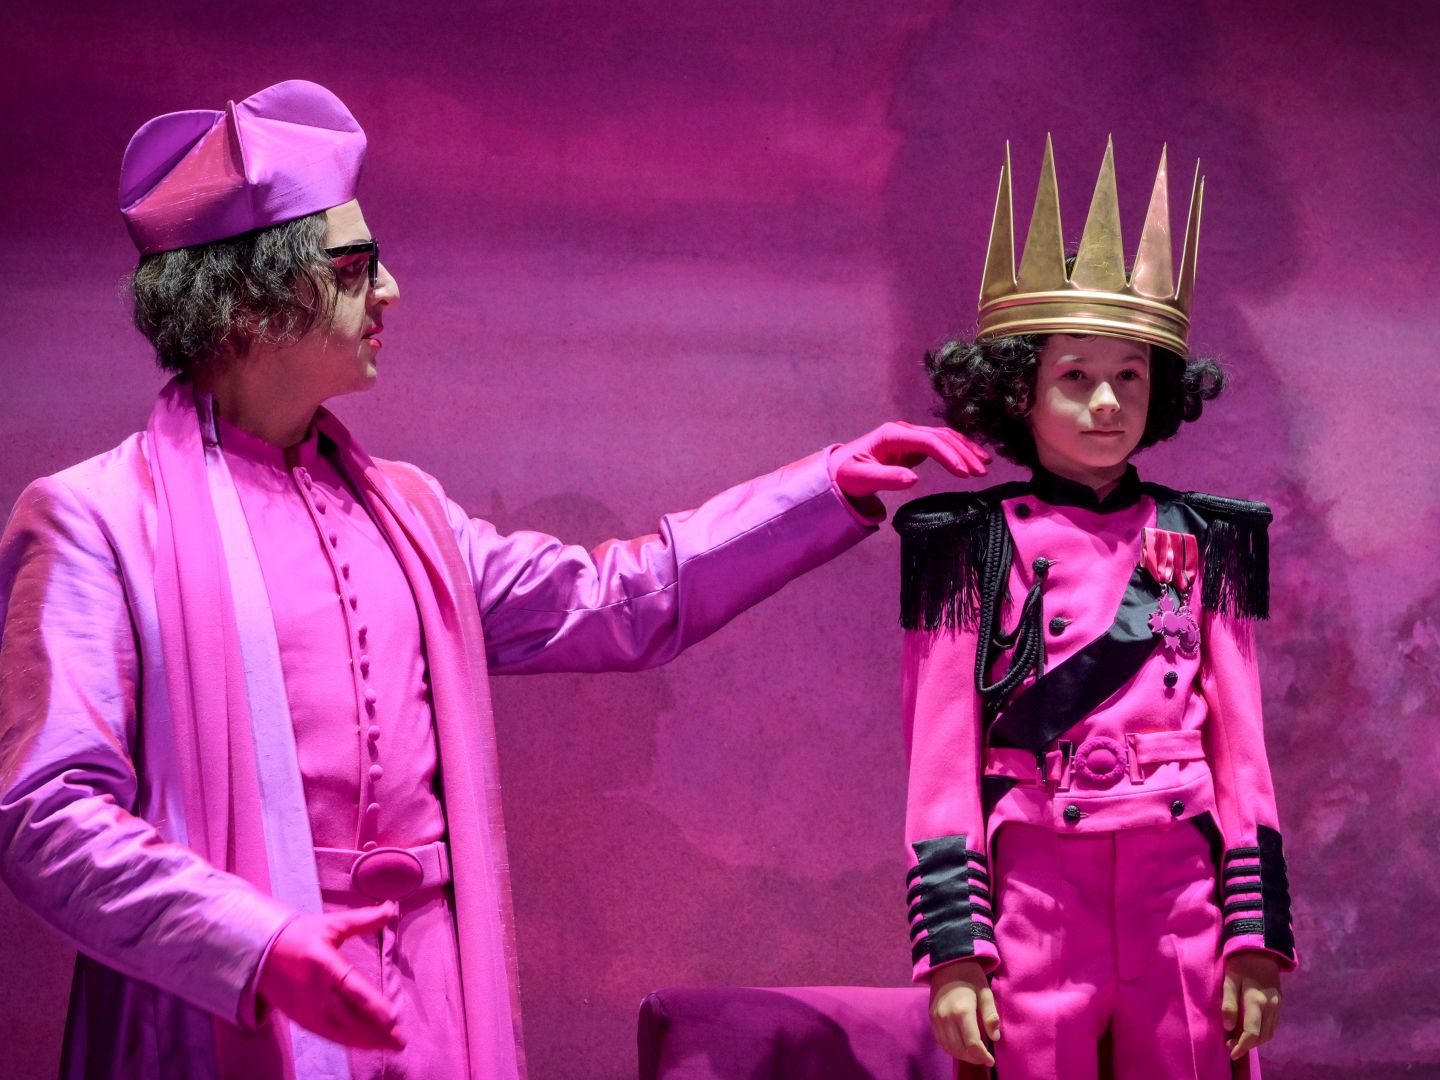 Ein in rosa gekleideter Mann streicht einem rosa gekleideten Kind mit einer Krone über die Wange.